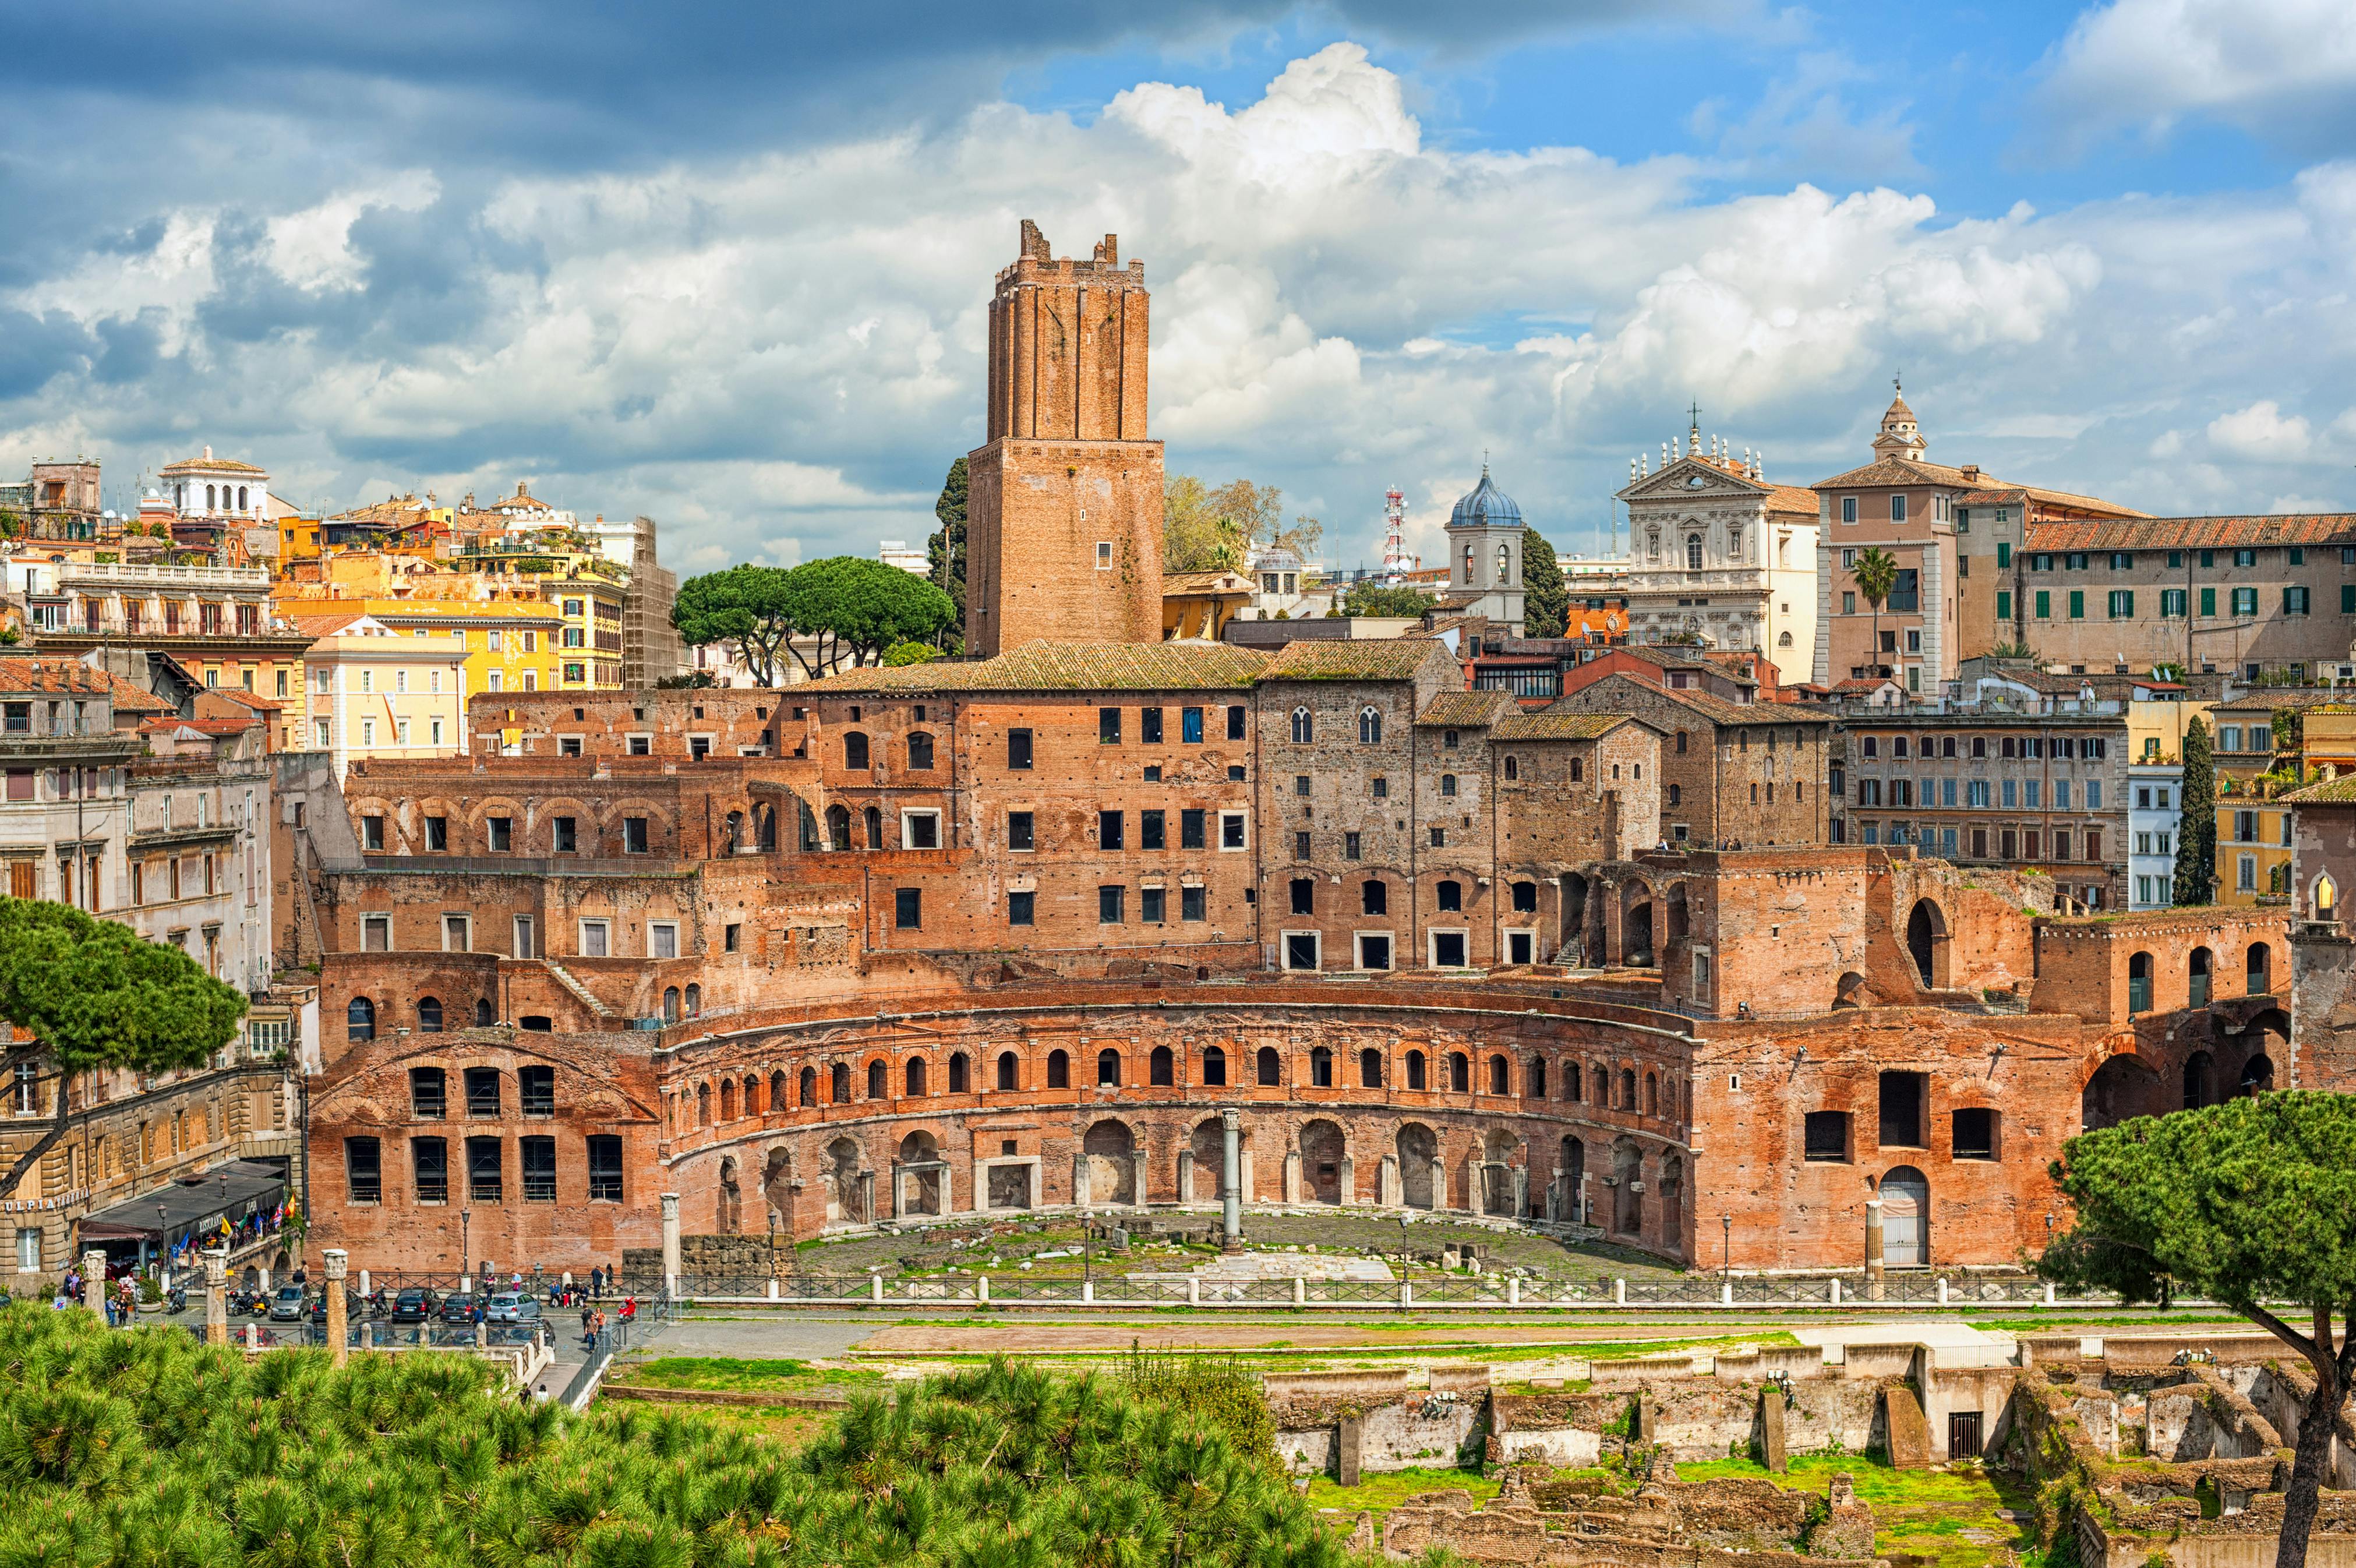 Billets d'entrée aux marchés de Trajan et au musée Fori Imperiali